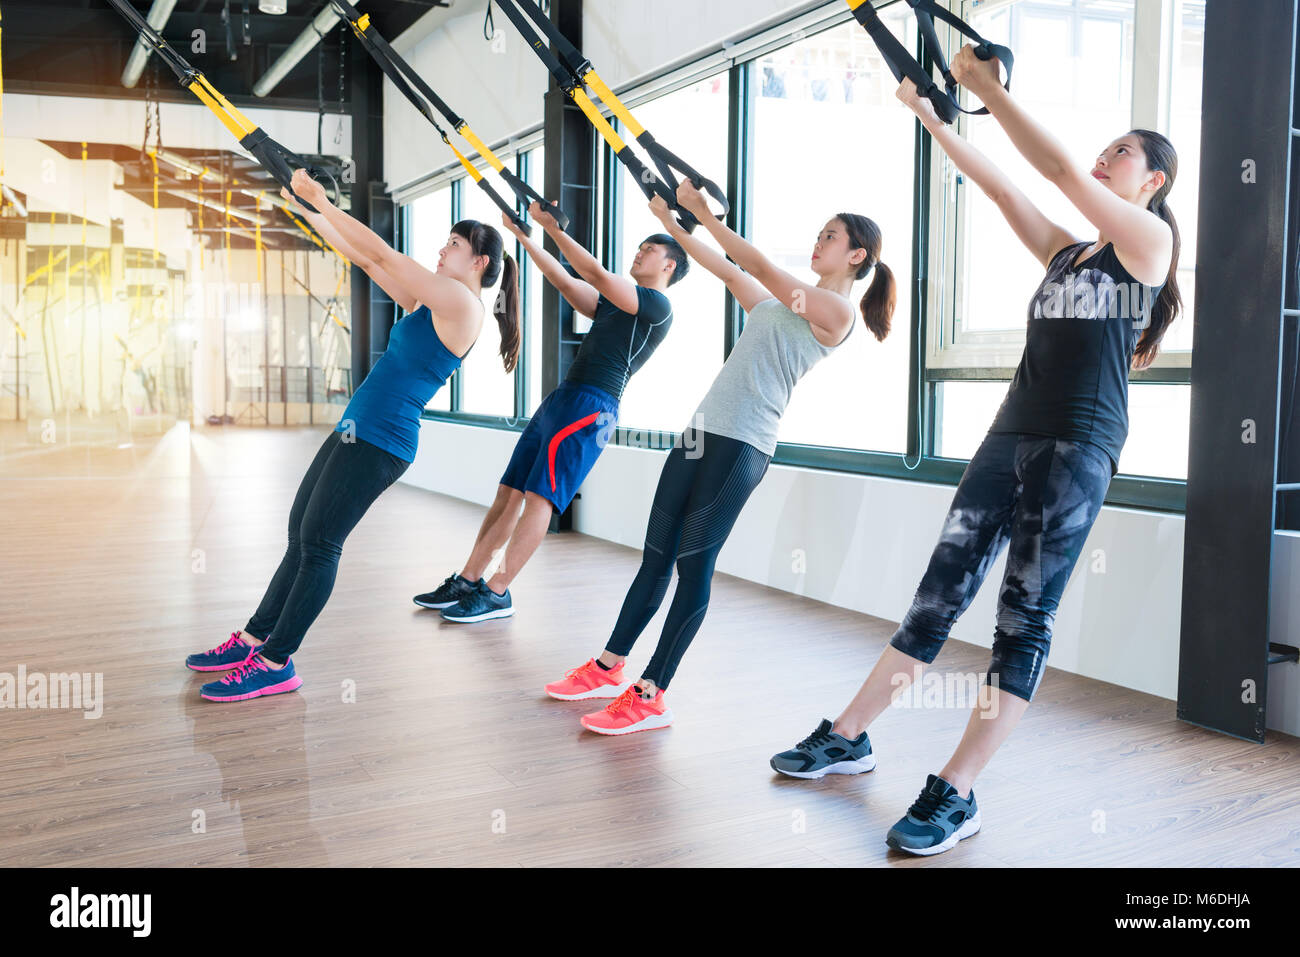 Gruppe von Fitness TRX Suspension gurte Übungen asiatischen Menschen tun das Hochziehen, arbeiten mit eigenen Gewicht in eine sonnige helle Fitnessraum. Stockfoto